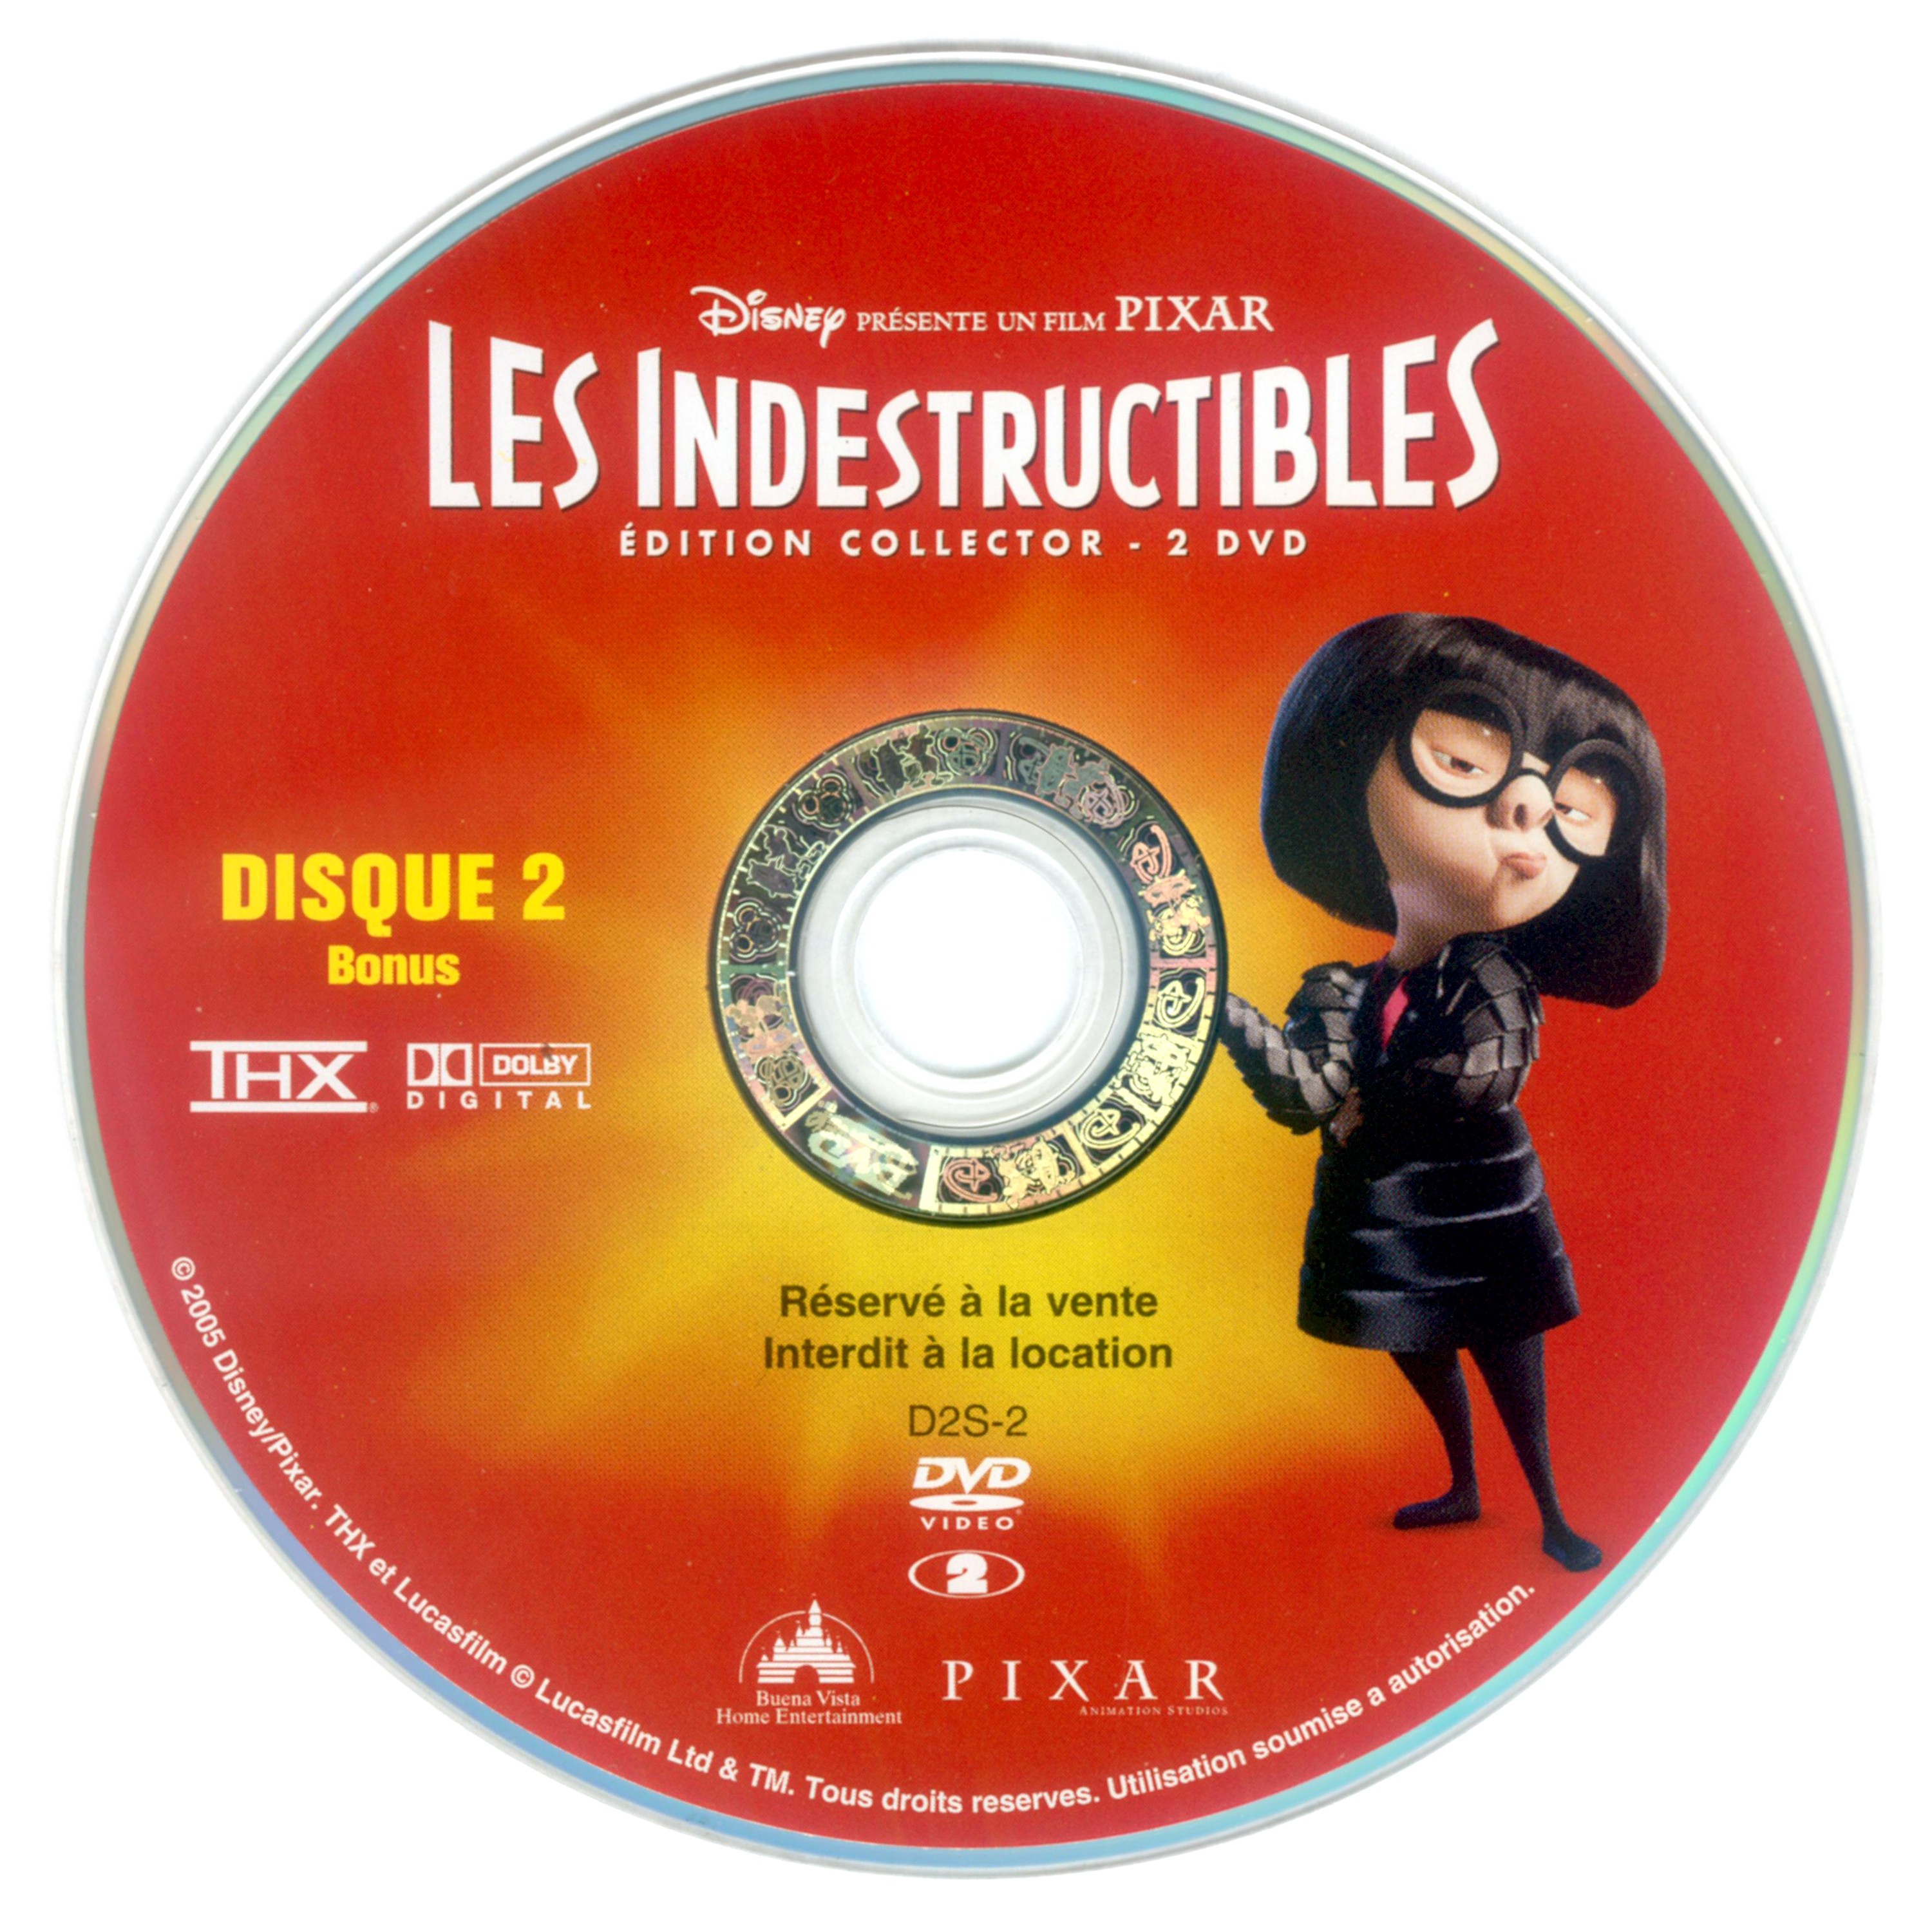 Les indestructibles DISC 2